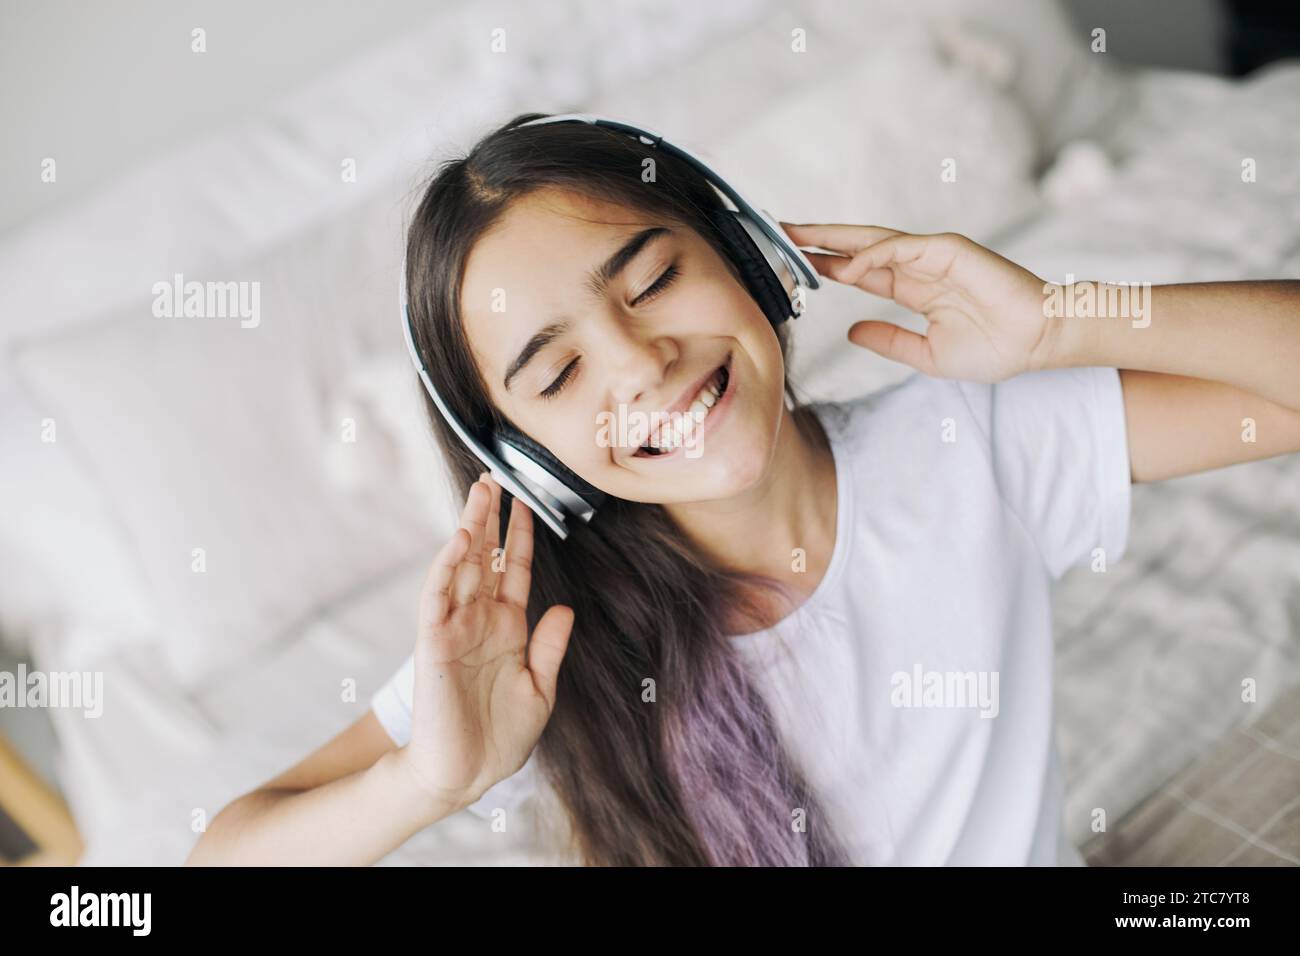 Hübsches Mädchen, das vor Teenagern lebt, hört Musik über kabellose Kopfhörer, Nahaufnahme des Gesichts. Moderne Technik, Spaß, Freizeit Stockfoto